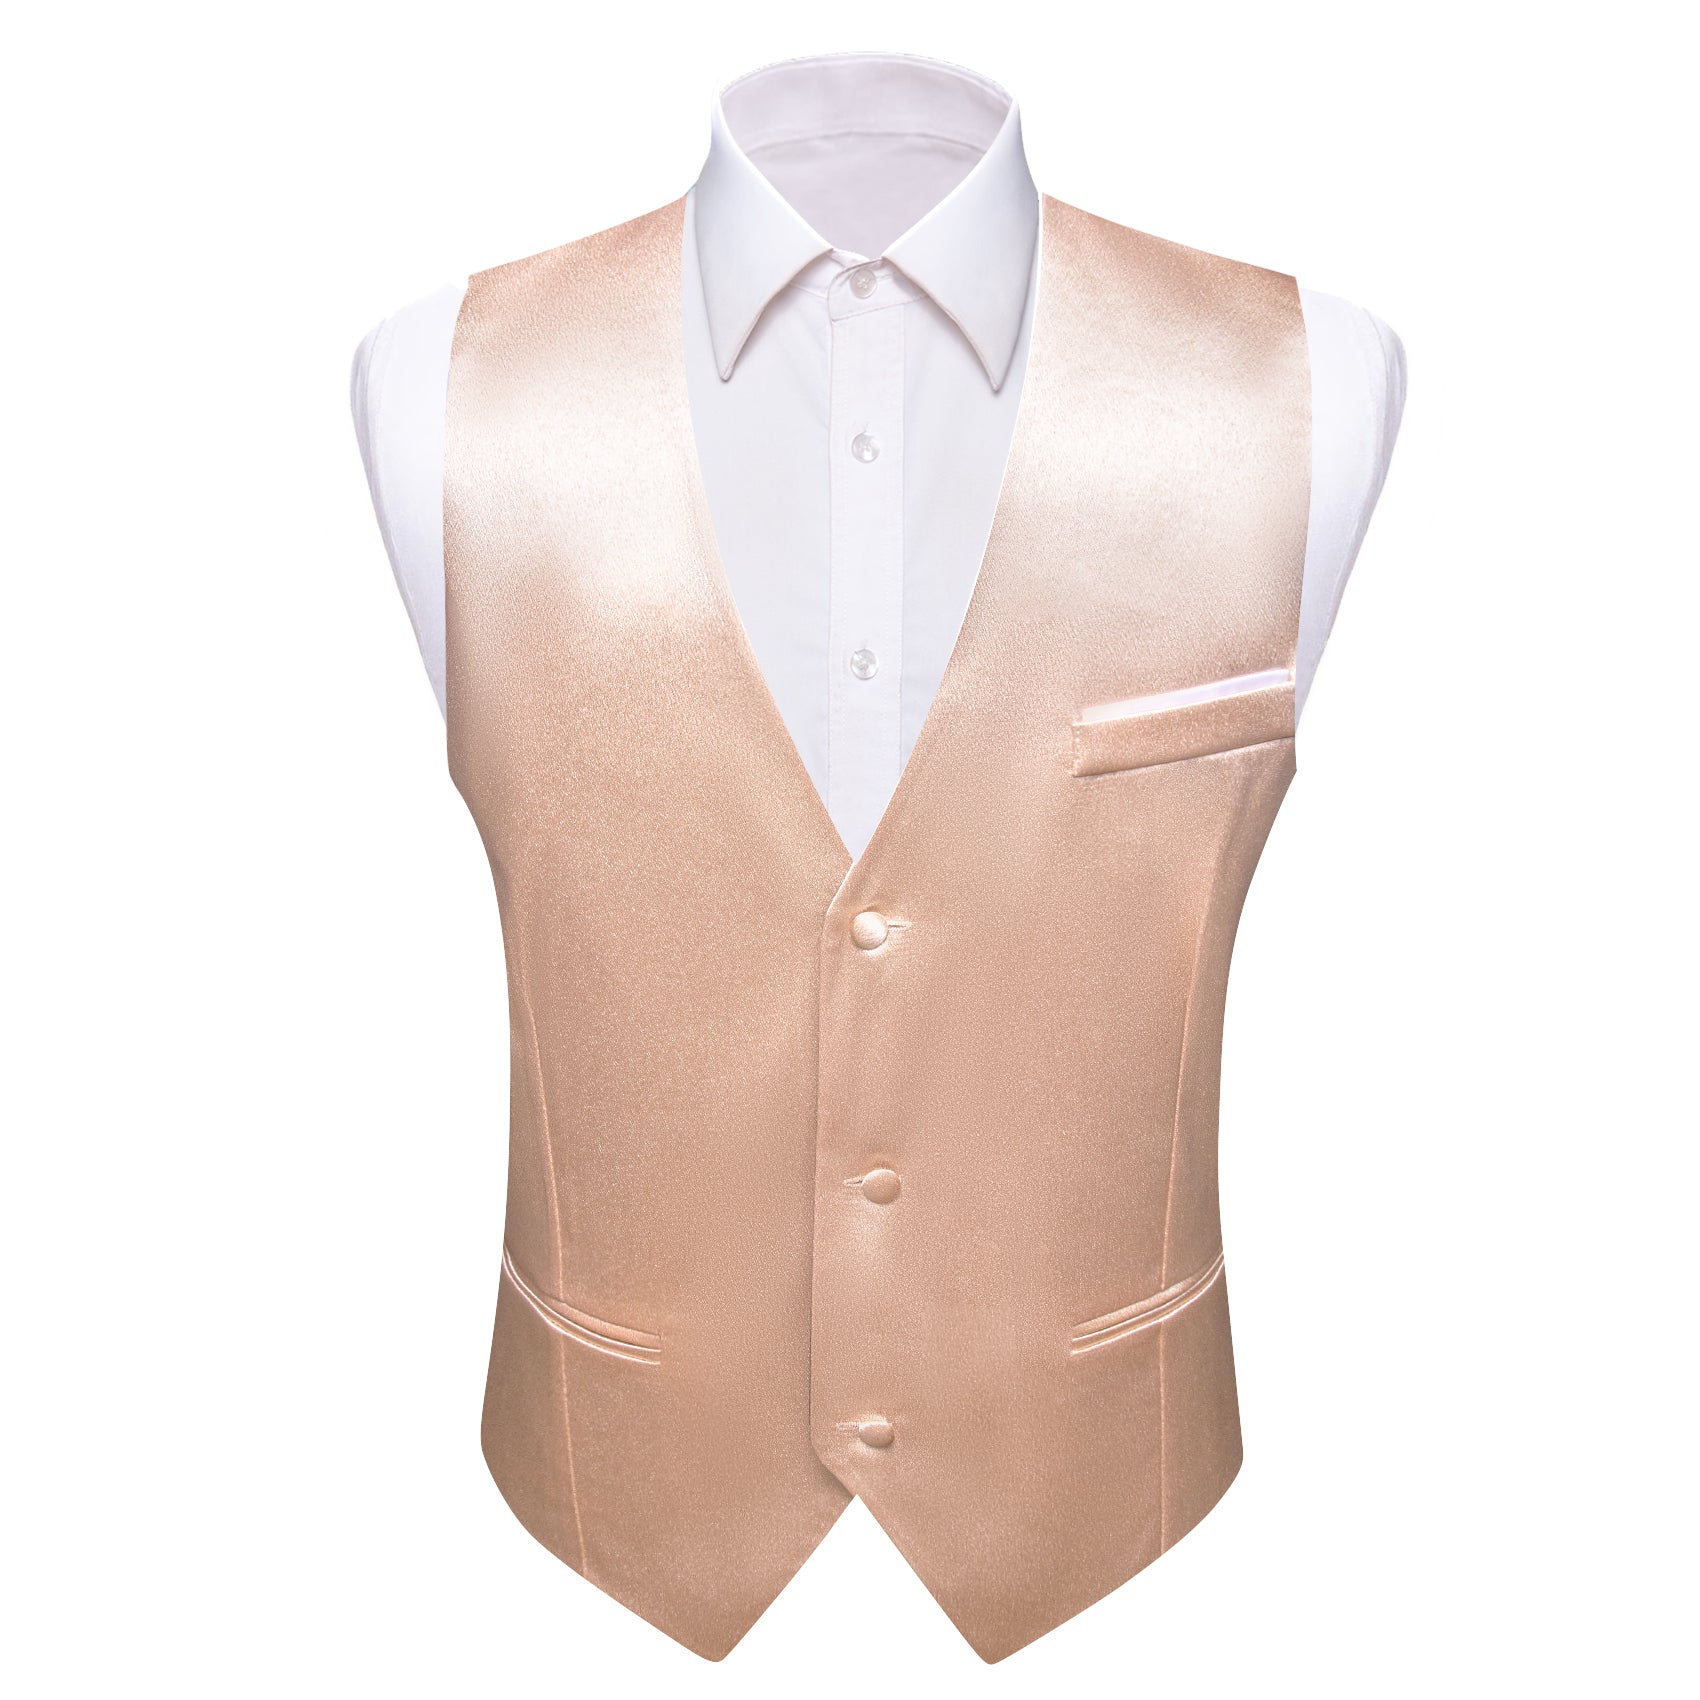 Barry.wang Light Beige Solid Business Vest Suit